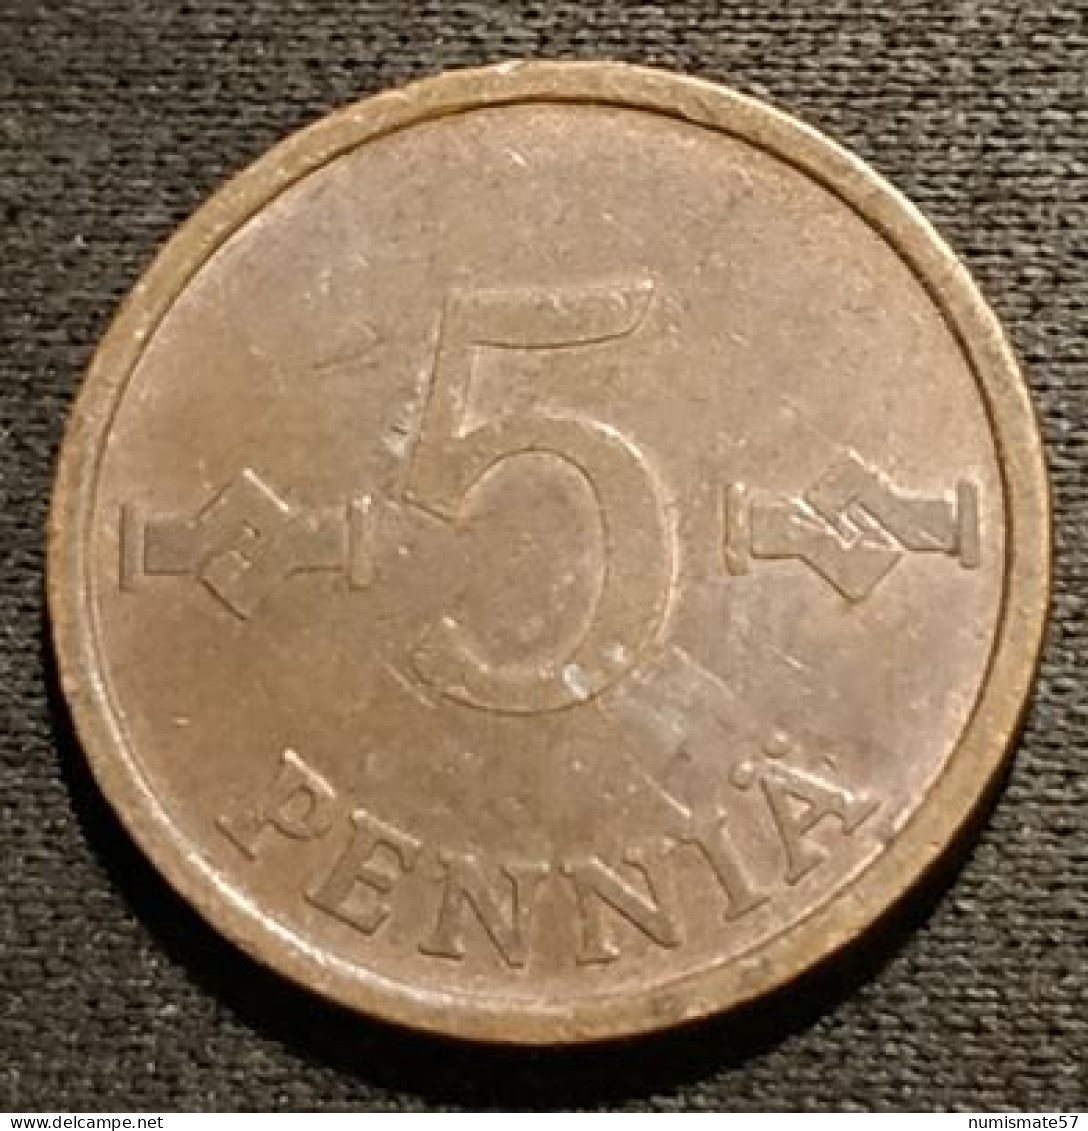 FINLANDE - FINLAND - 5 PENNIA 1966 - KM 45 - Finlande